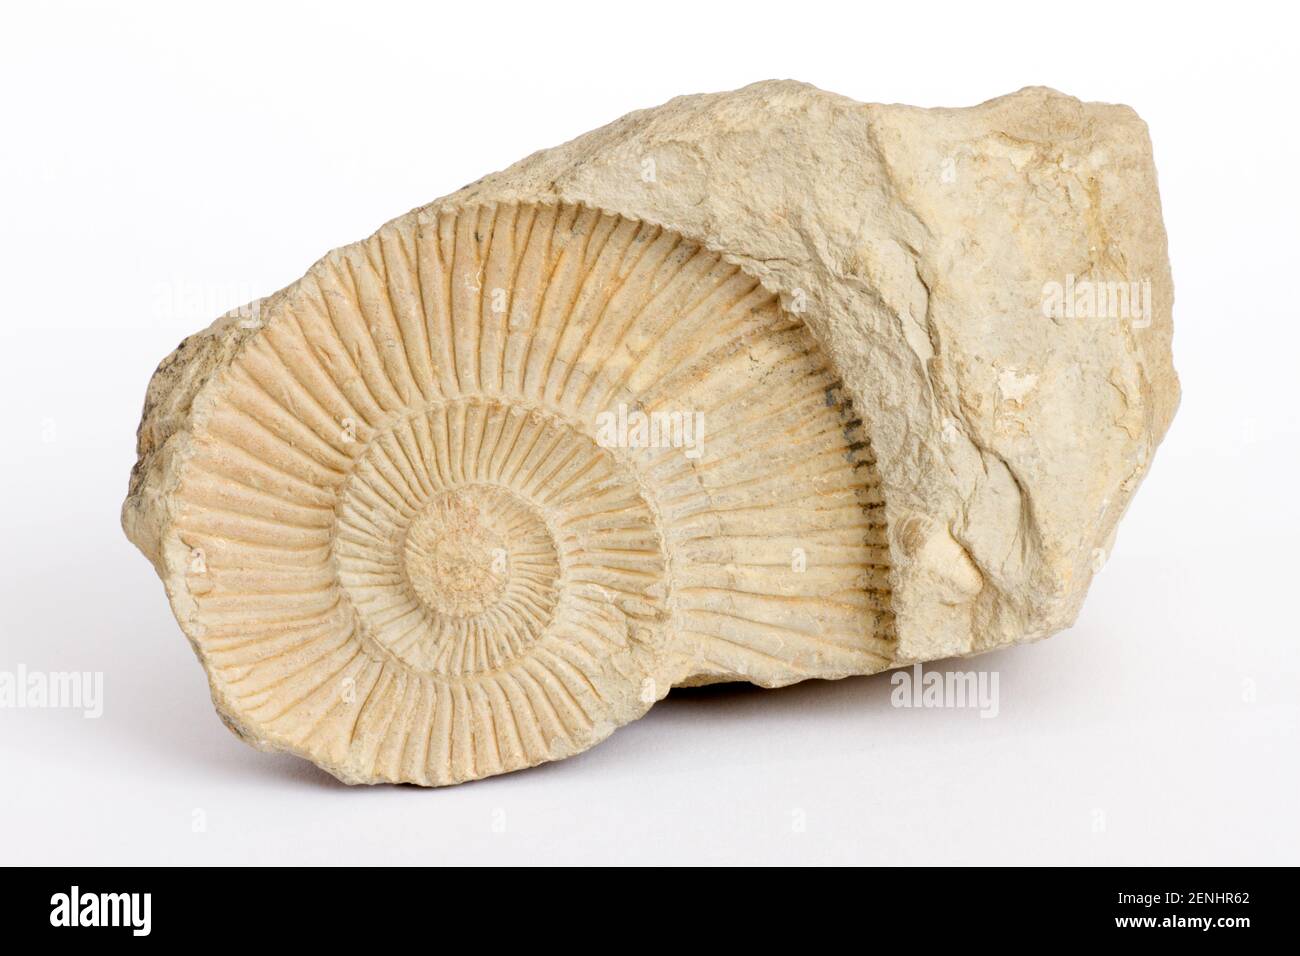 Orthosphiuctes freybergi, Fossilien, Stock Photo